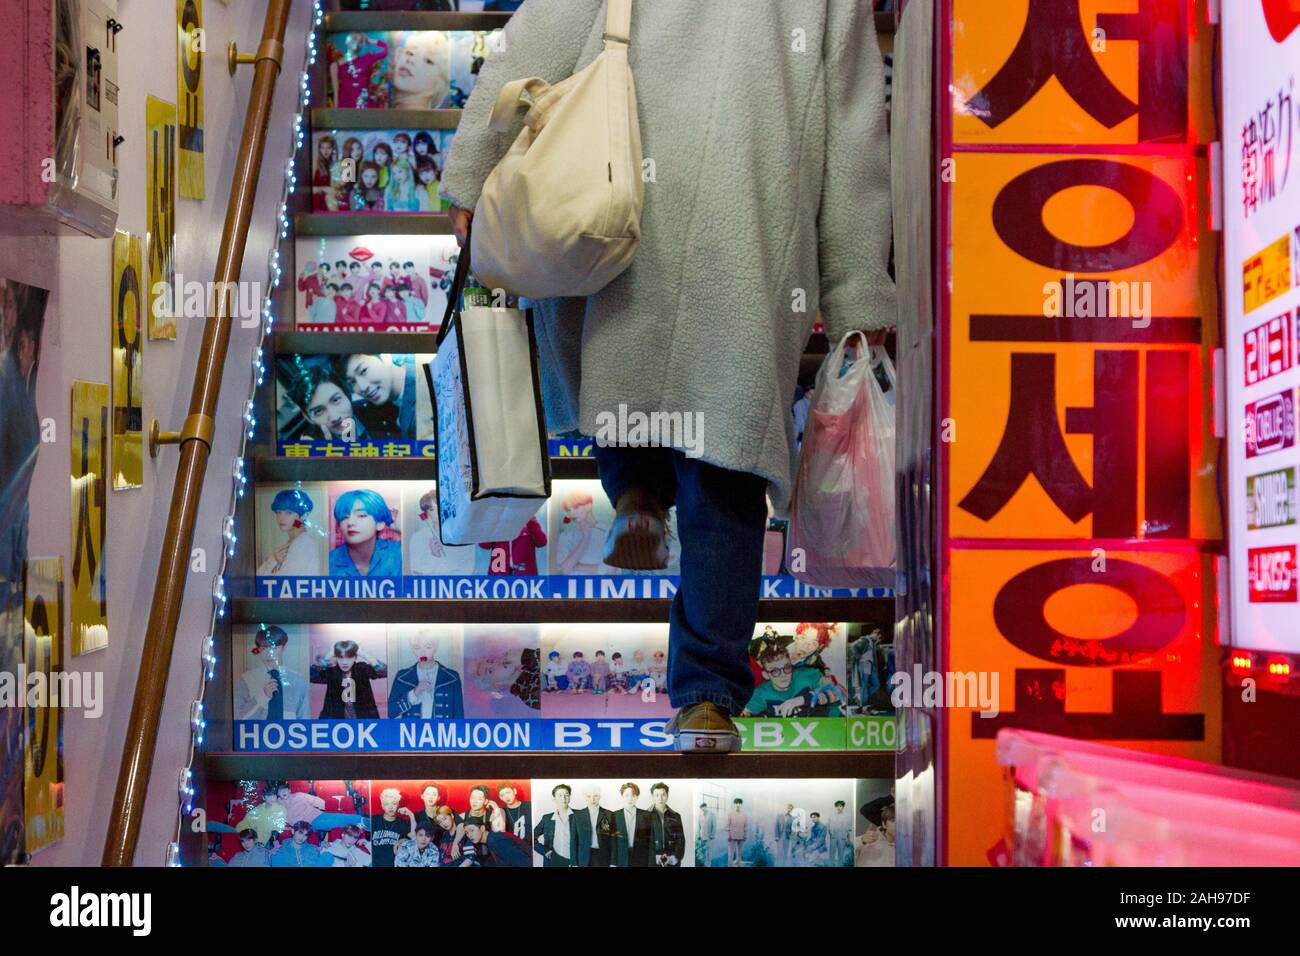 A woman carrying shopping bags monte escaliers avec des photos d'idoles coréen et célébrités sur eux dans un magasin à Shin-Okubo, Shinjuku, Tokyo, Japon. Banque D'Images